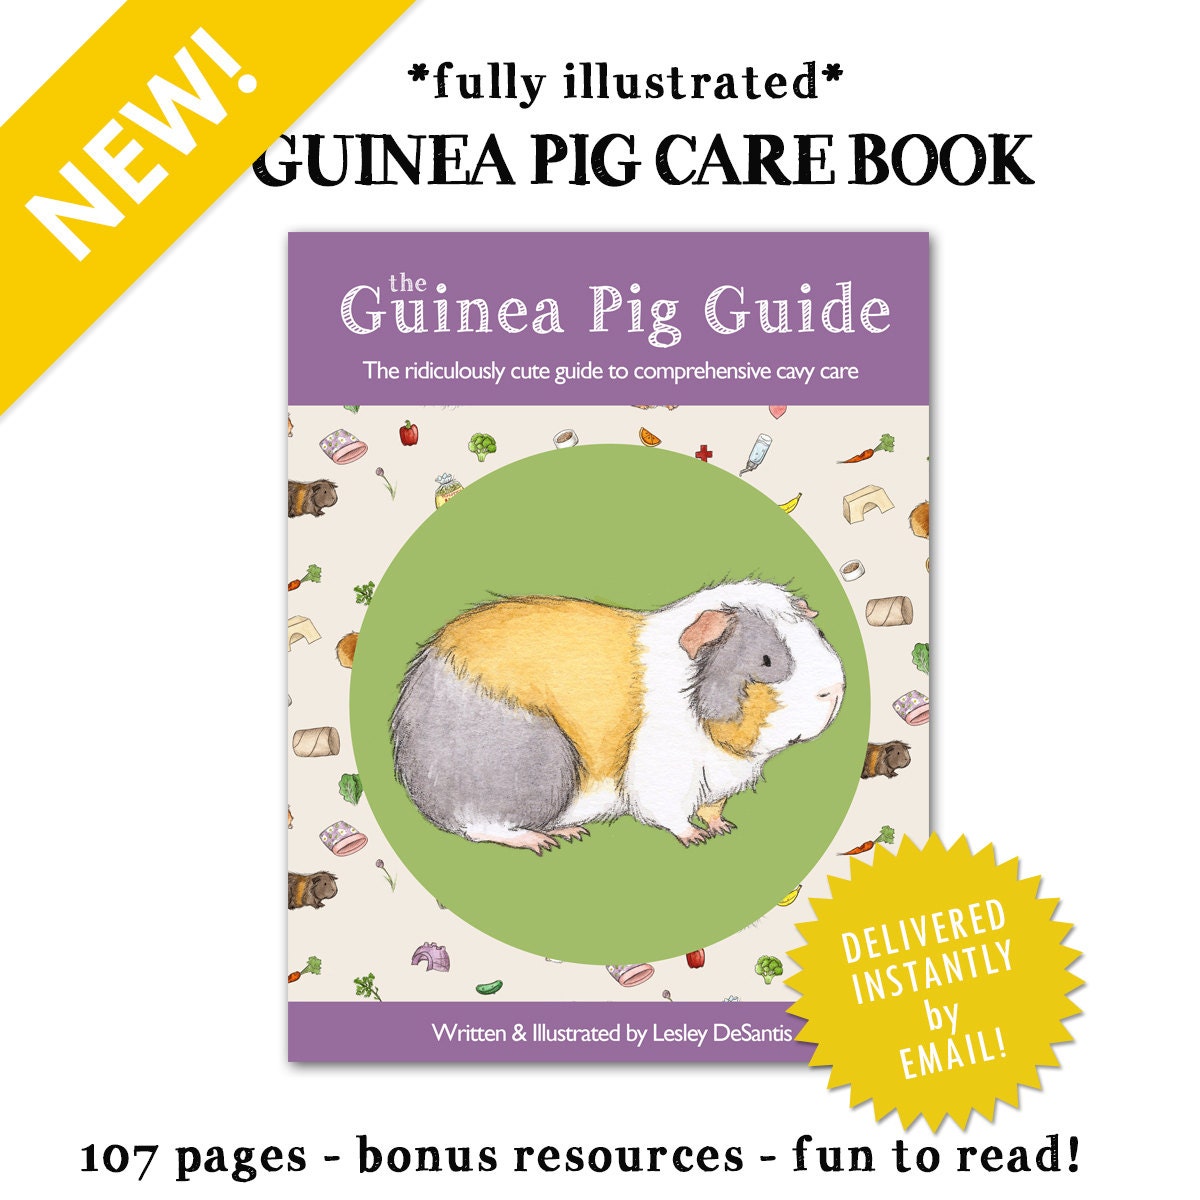 The Guinea Pig Guide guinea pig care book PDF over 100